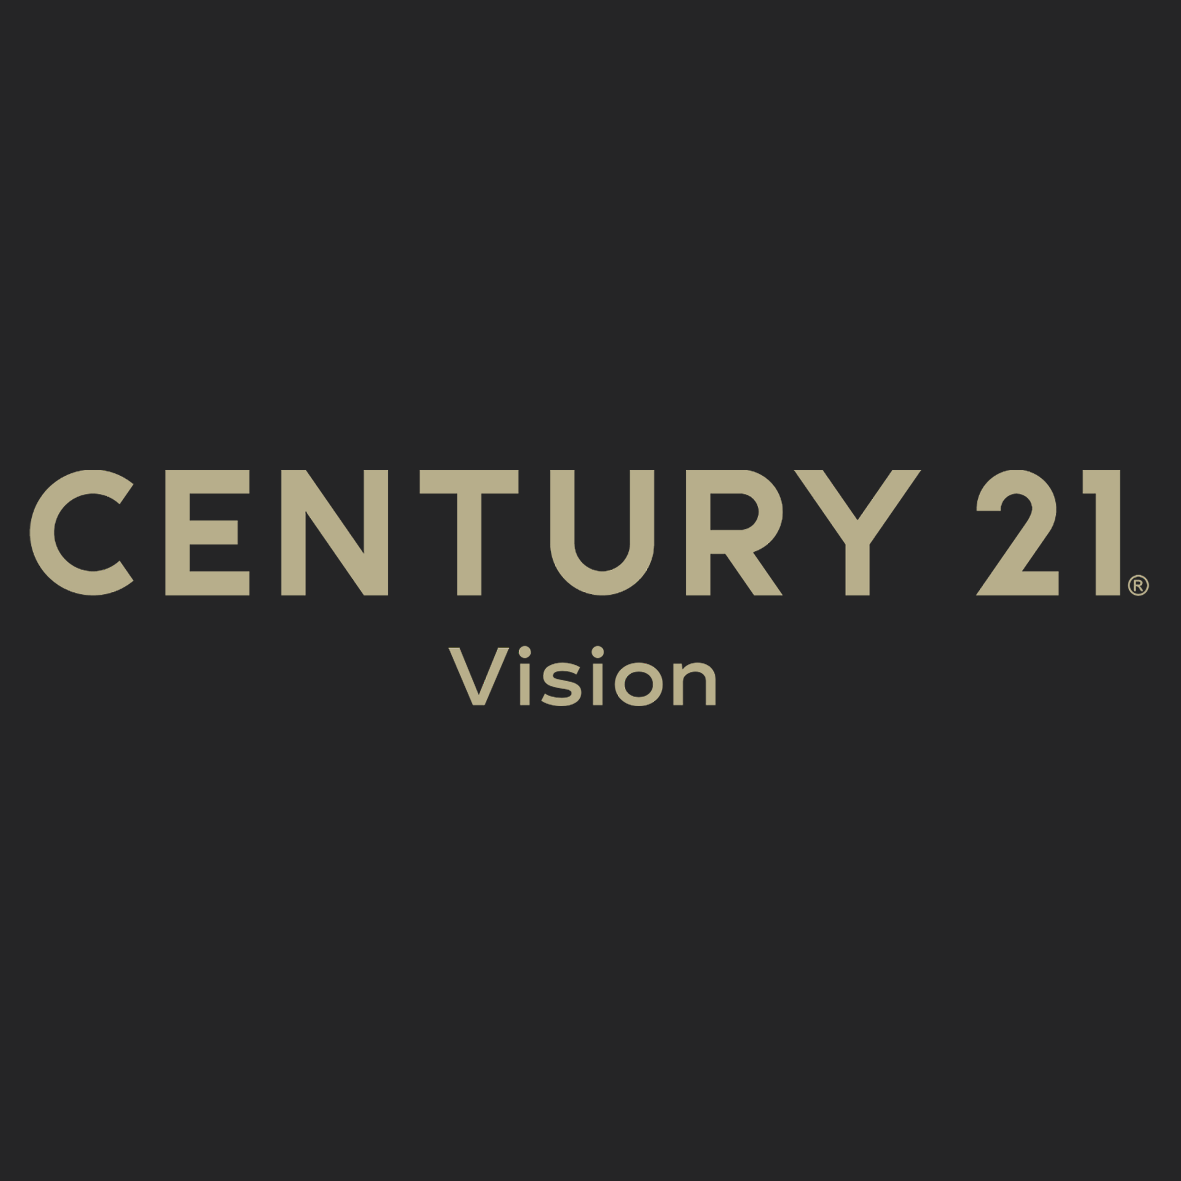 CENTURY 21 Vision